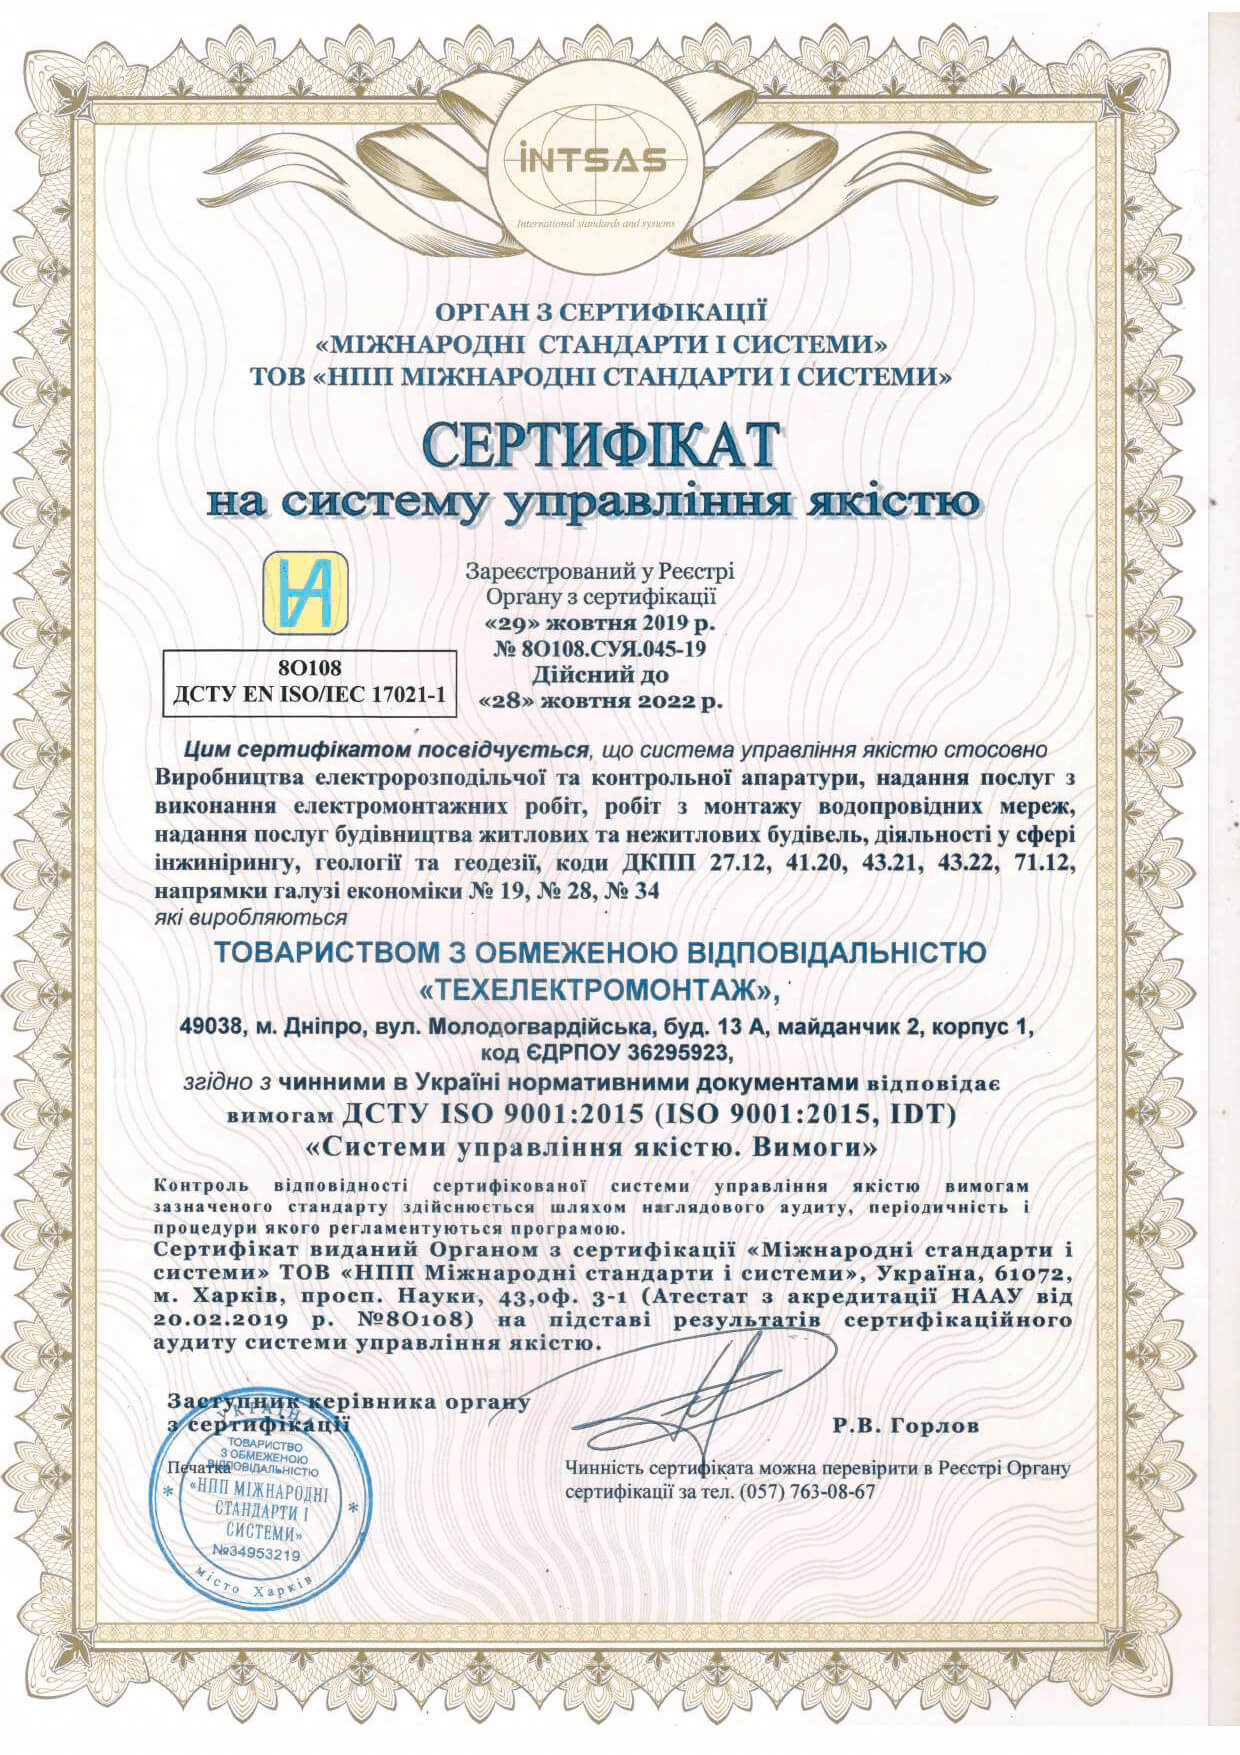 сertificat_ISO_9001_tem_com_ua